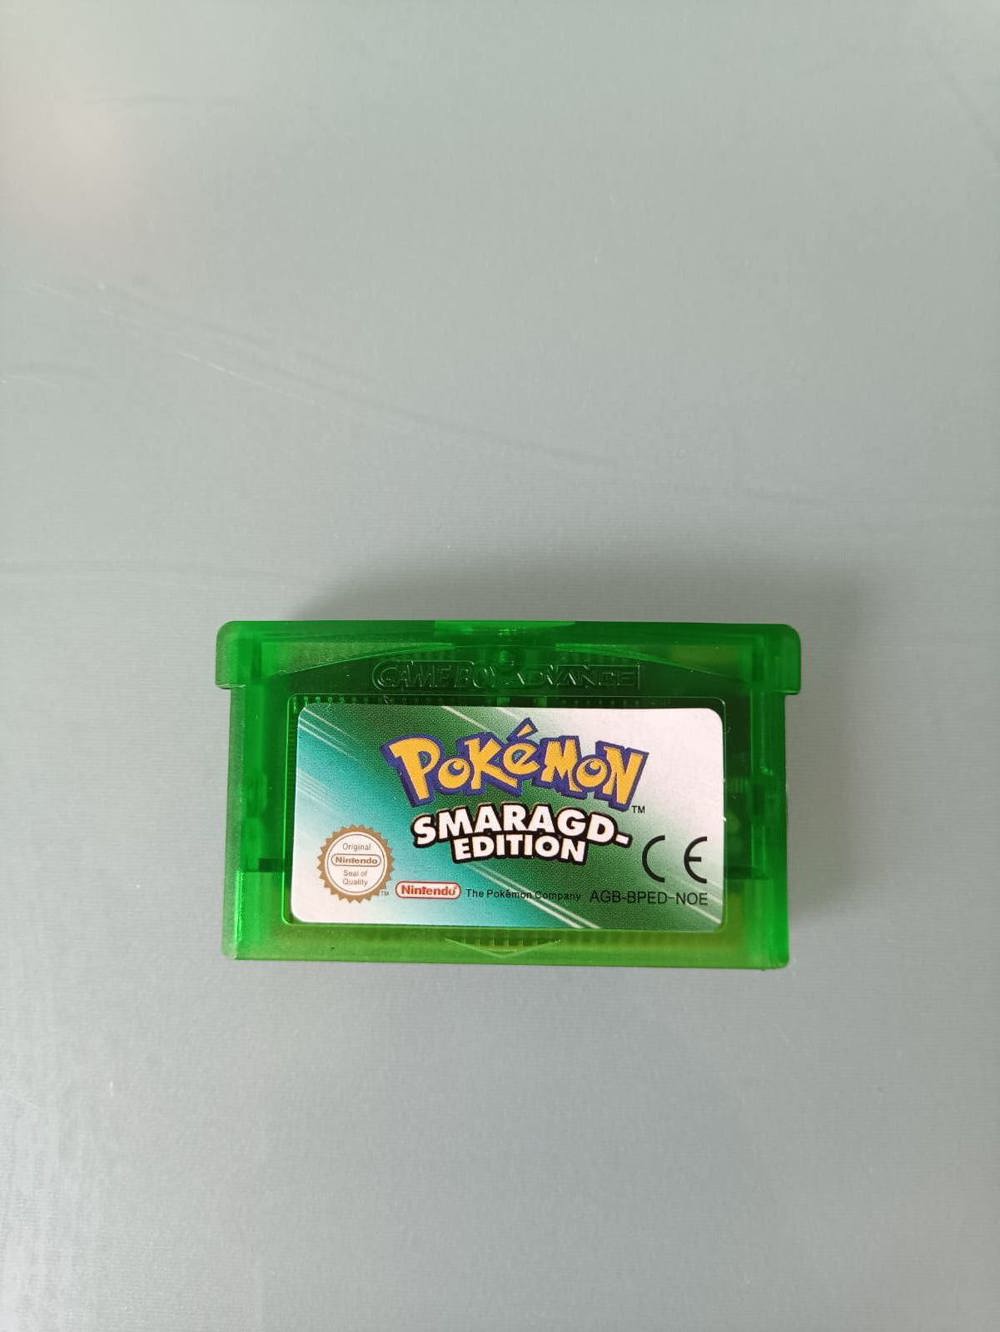 Pokemon Smaragd